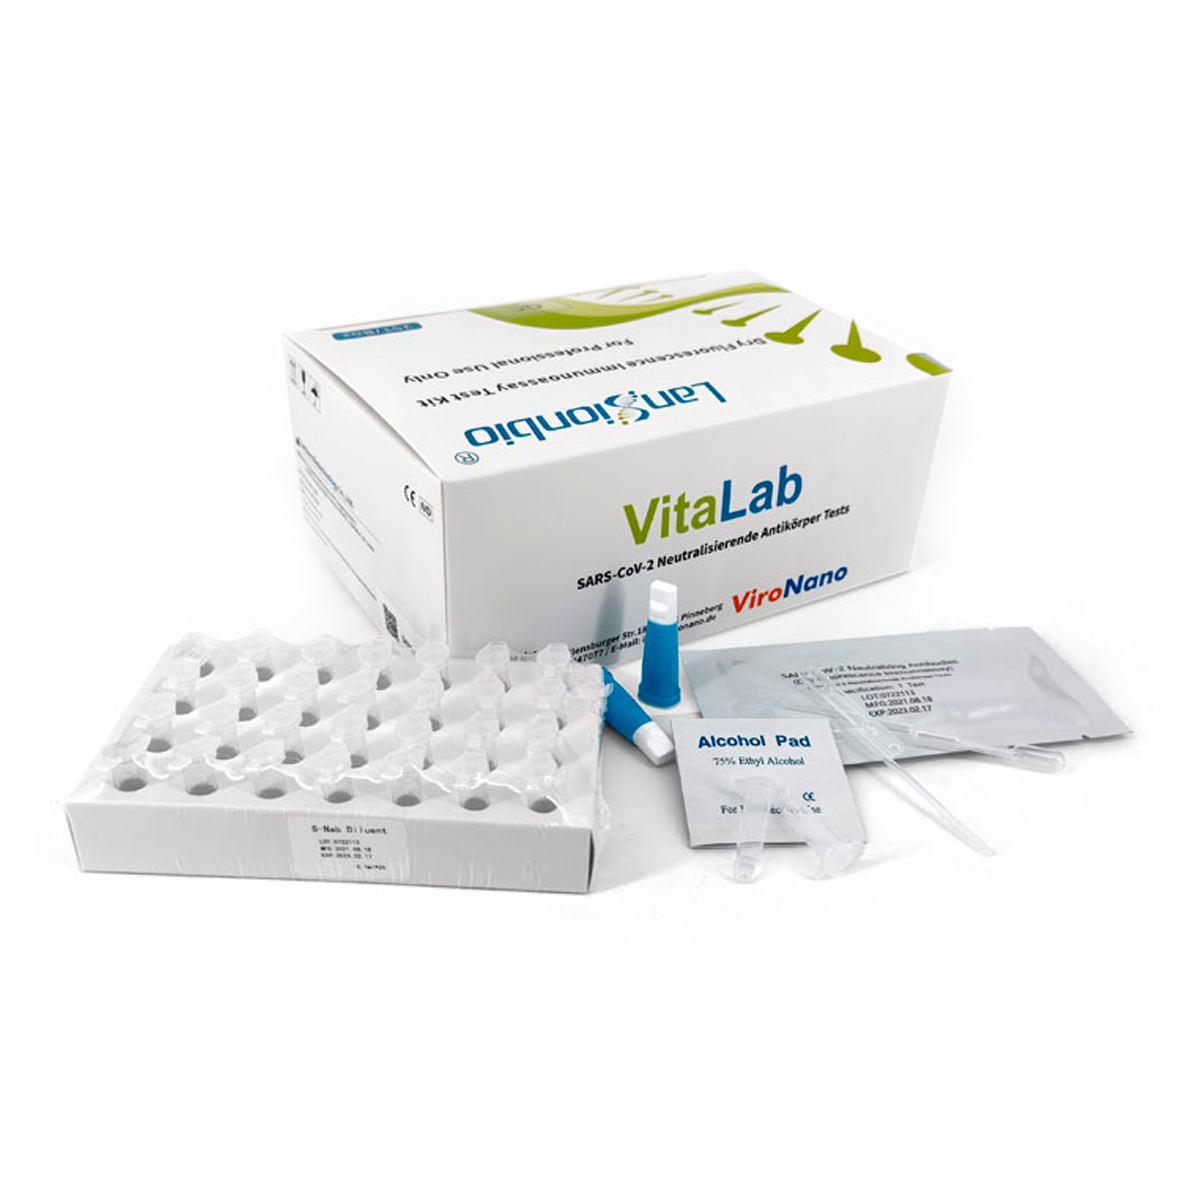 VitaLab Antikörper Testkit (1VE=25 Stück)